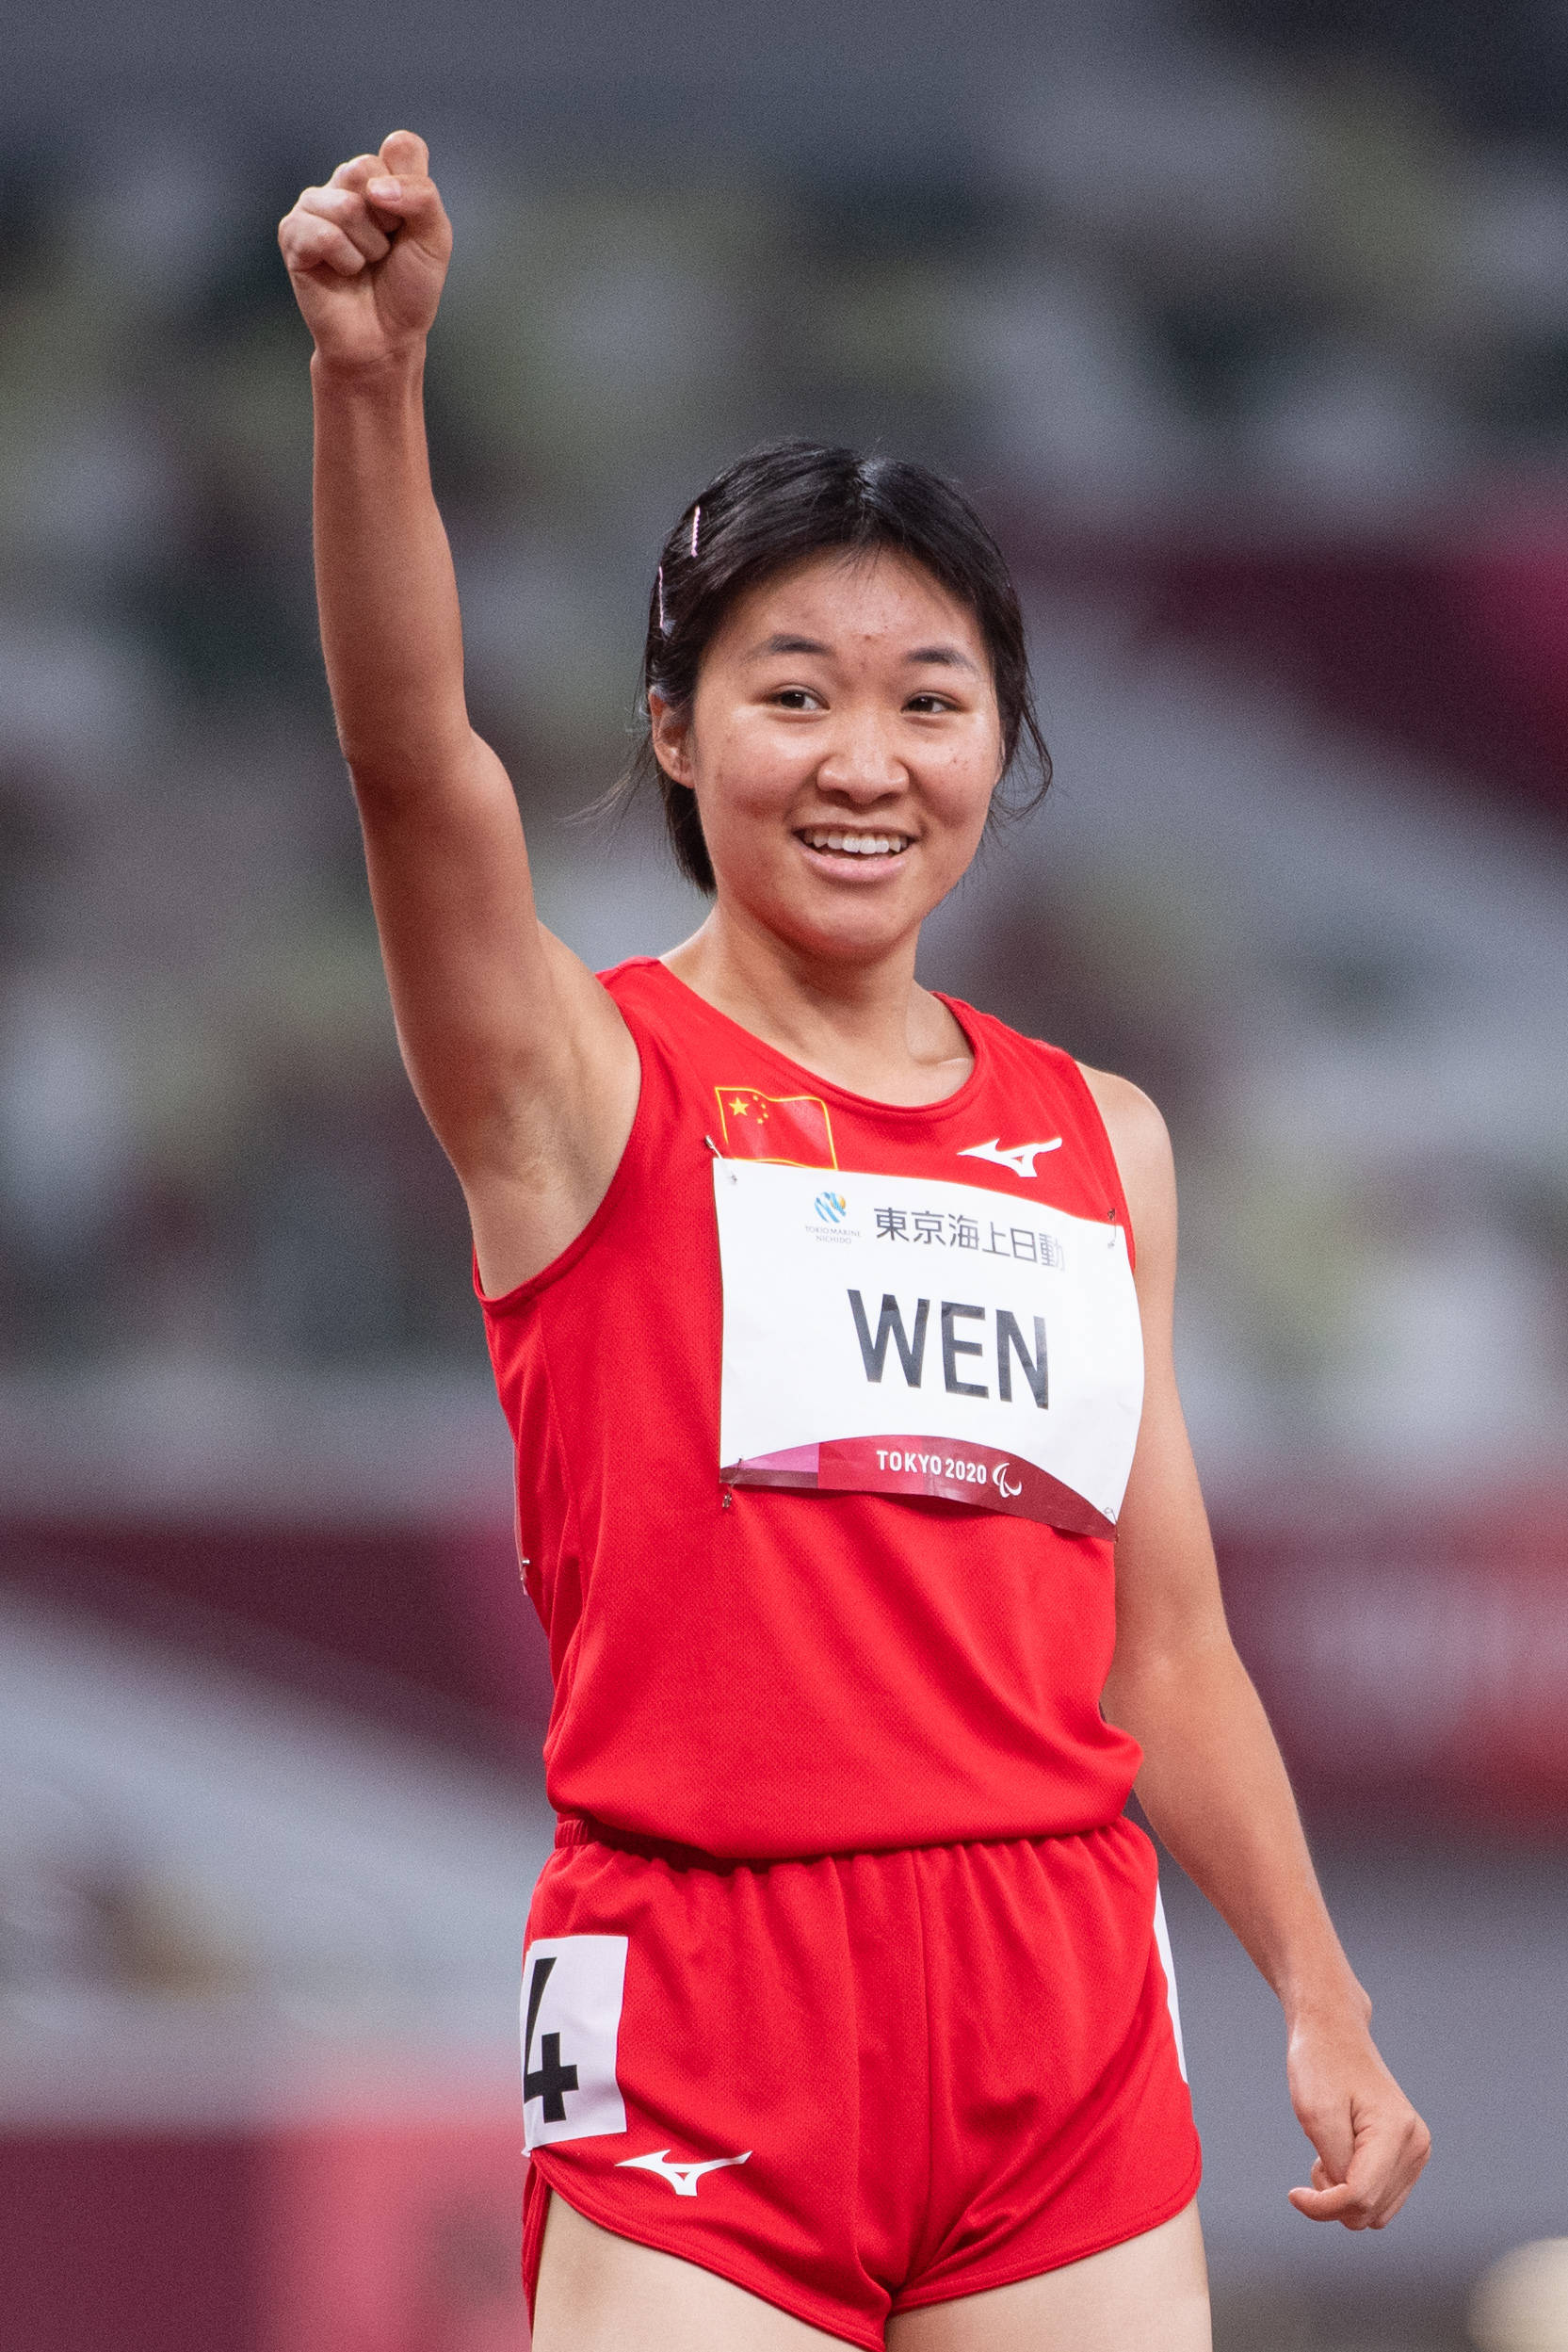 田径——女子200米t37级:文晓燕破世界纪录夺冠